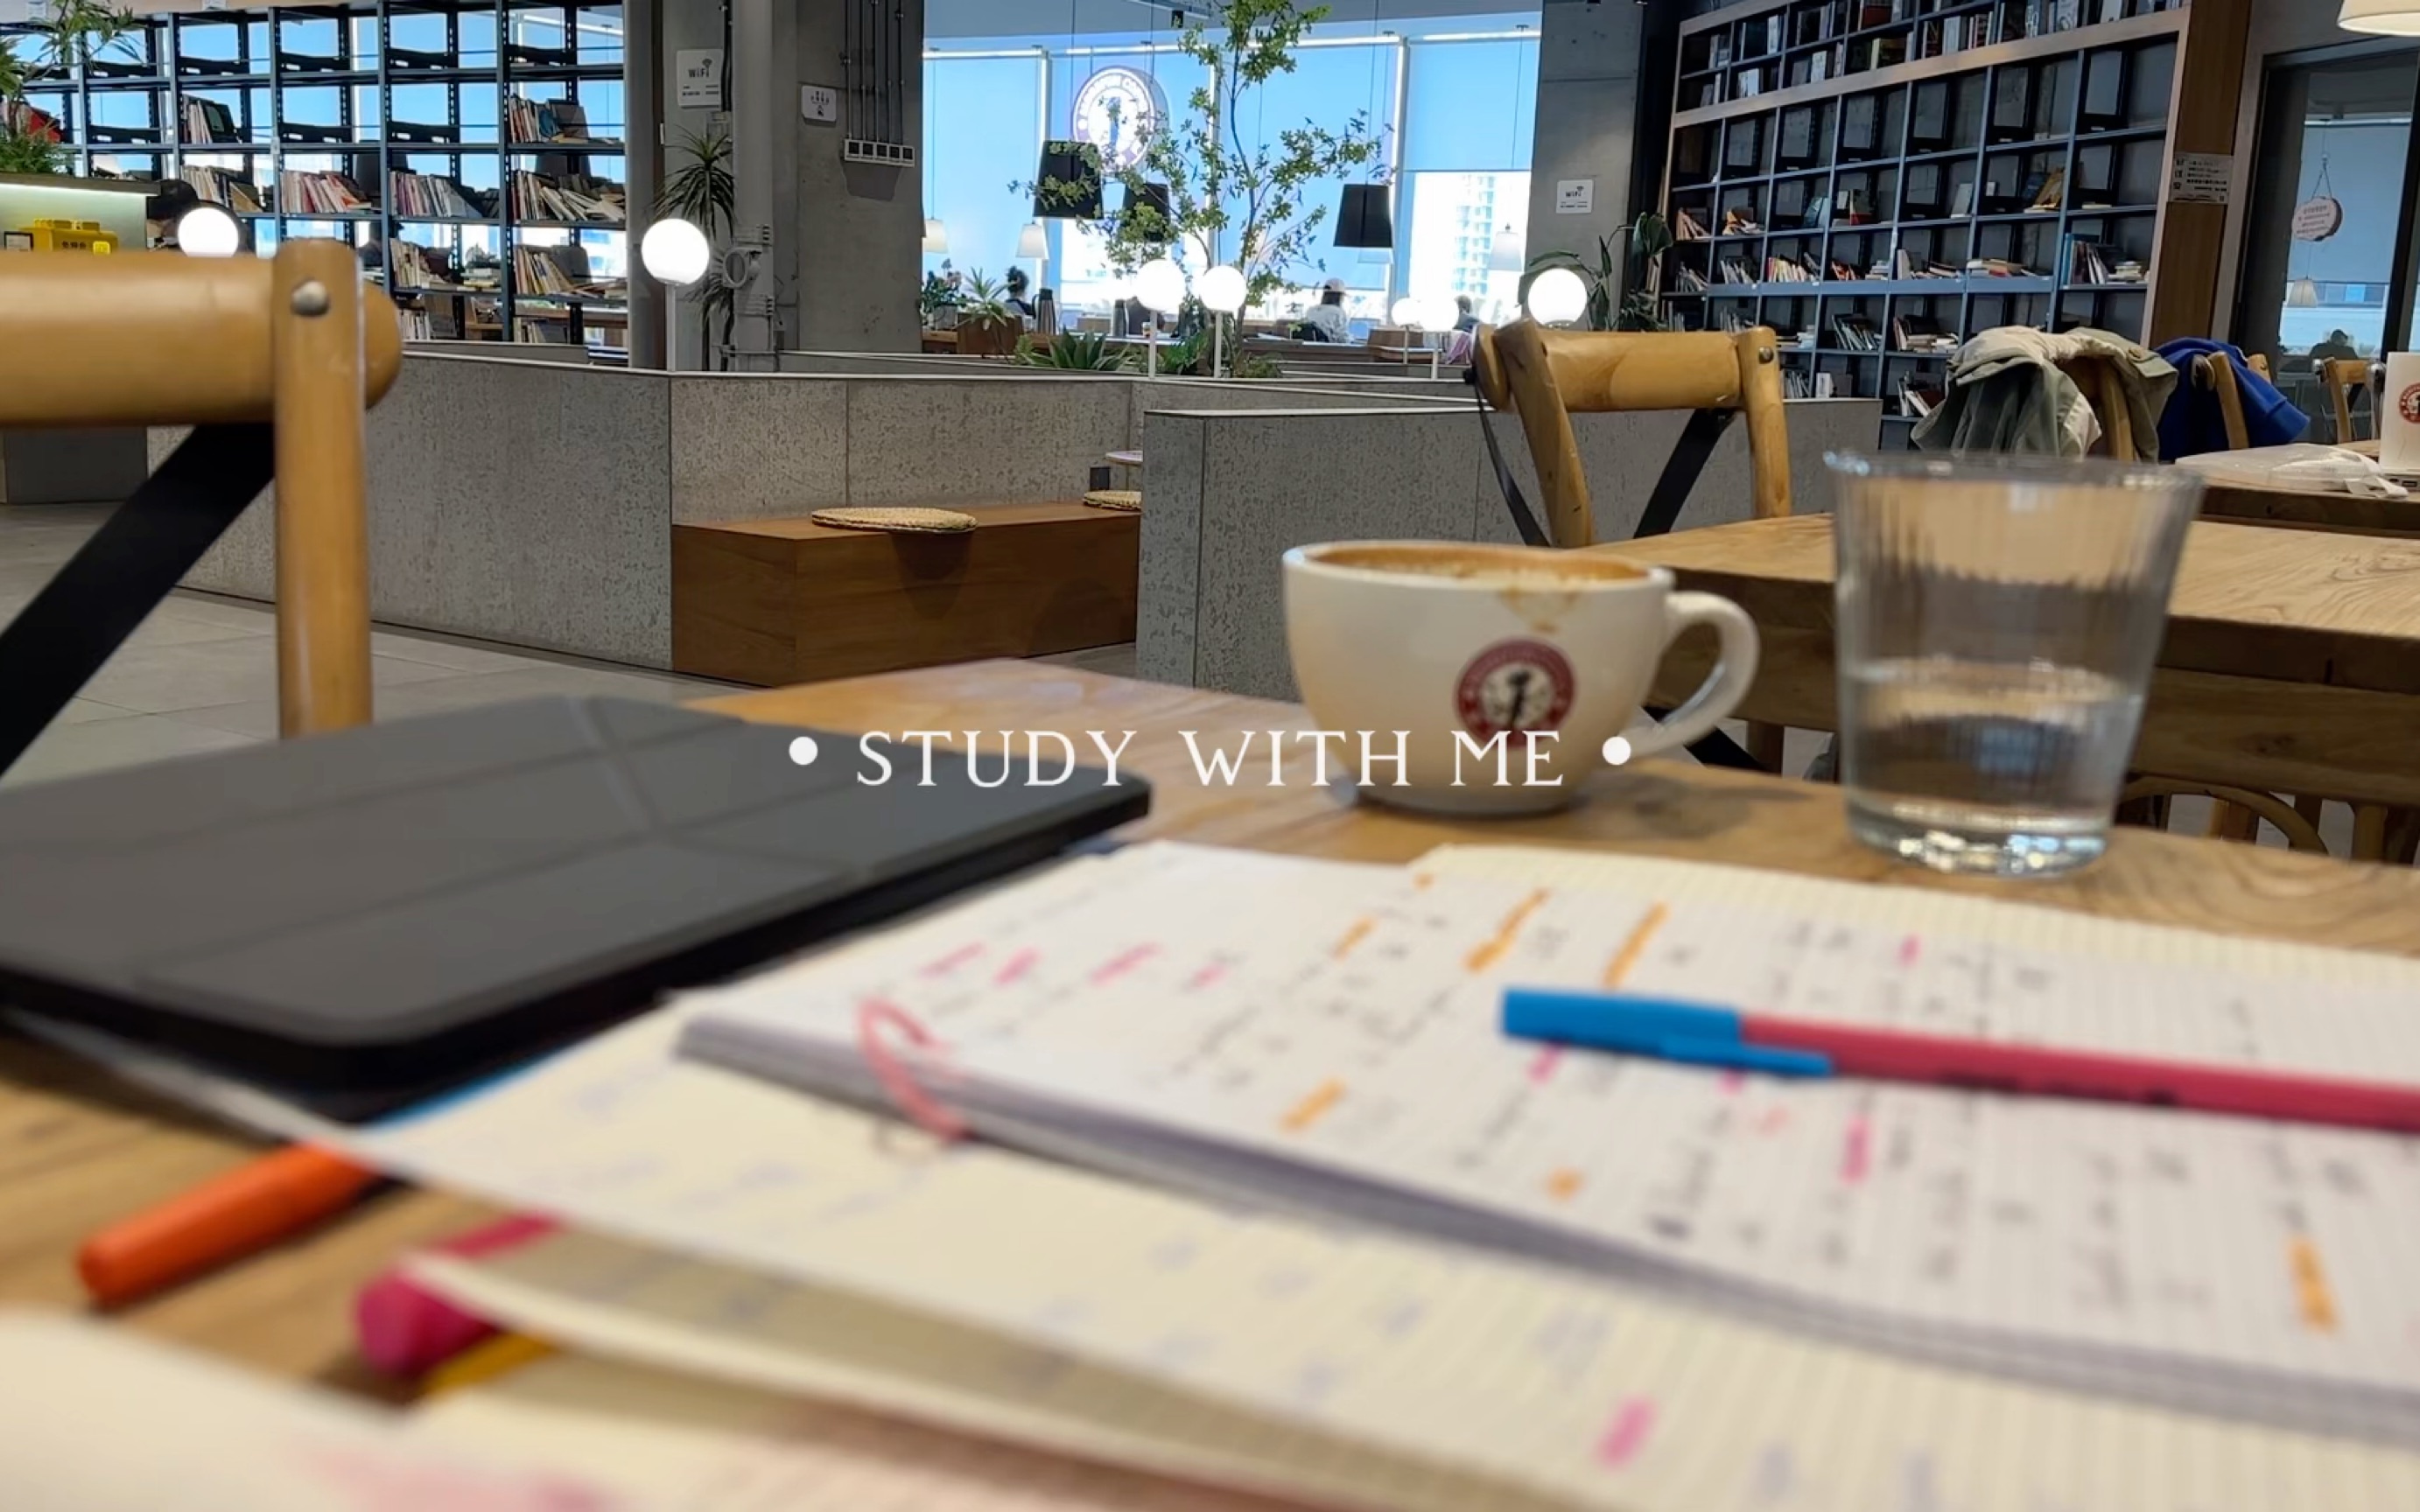 【实时视频 1h】轻音乐 • 咖啡馆背景音 • 沉浸式学习 • 白噪音 • study with me